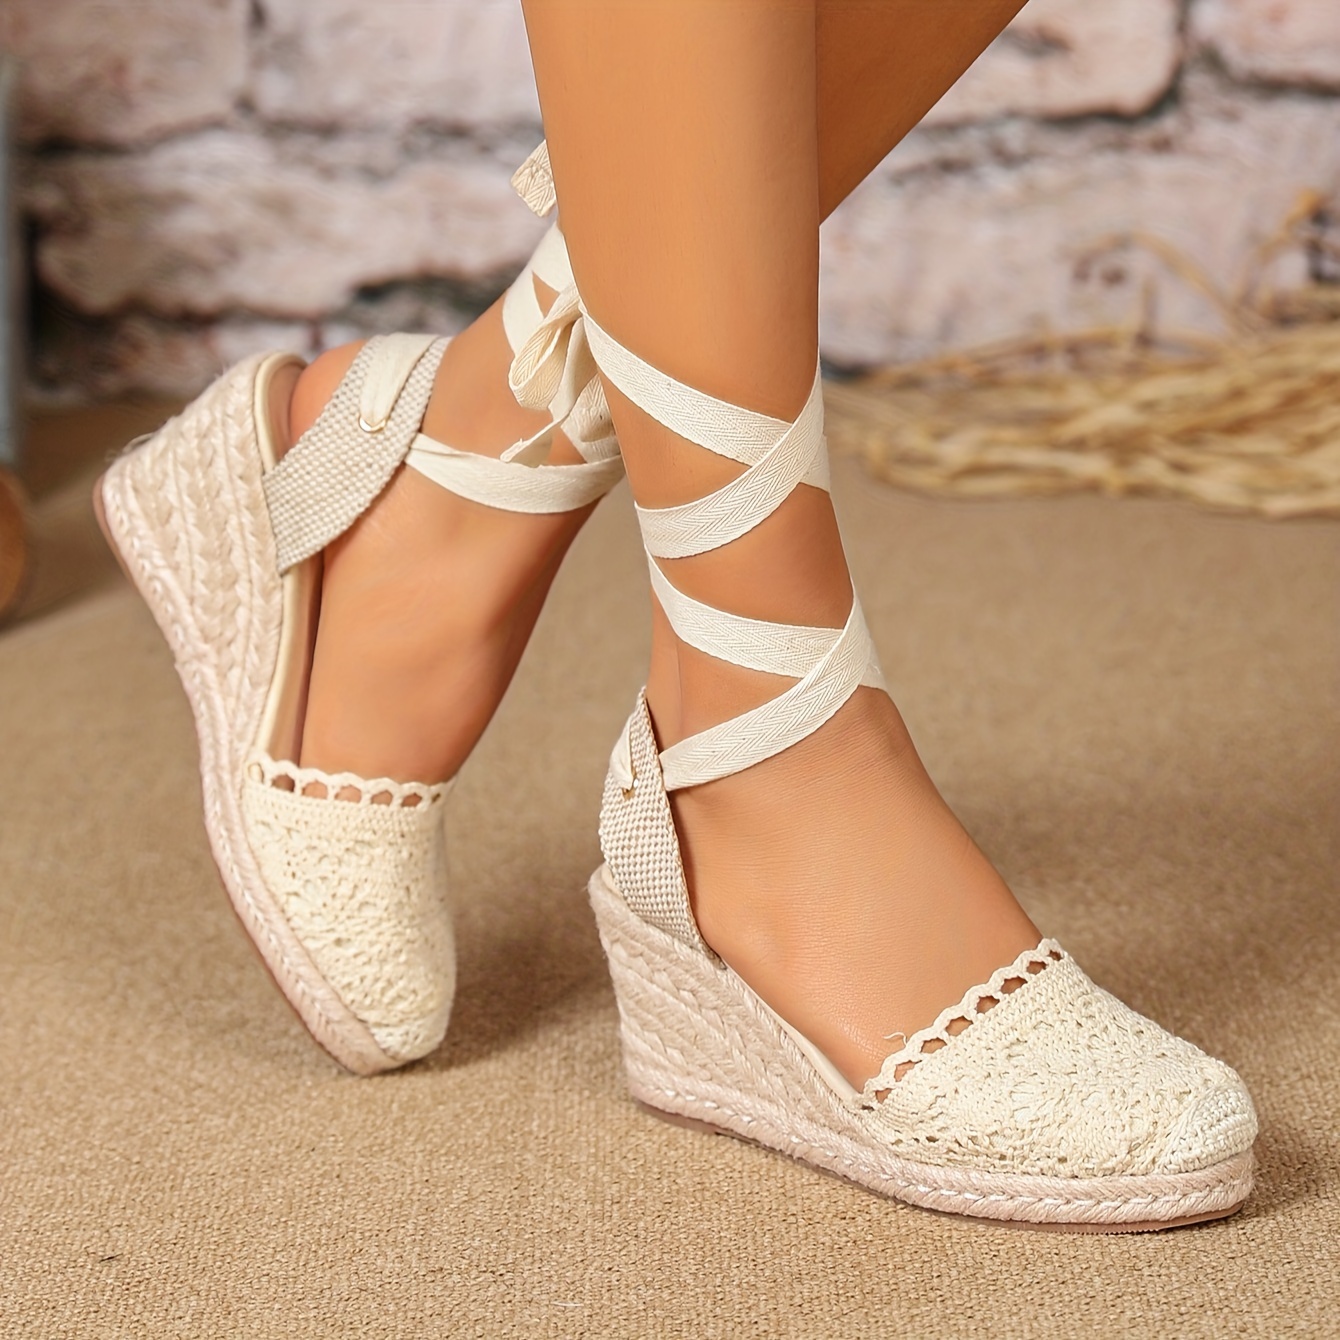 Women's Solid Color Gentle Sandals, Crisscross Straps Platform Crochet  Closed Toe Shoes, Espadrilles Wedge Leggings Shoes